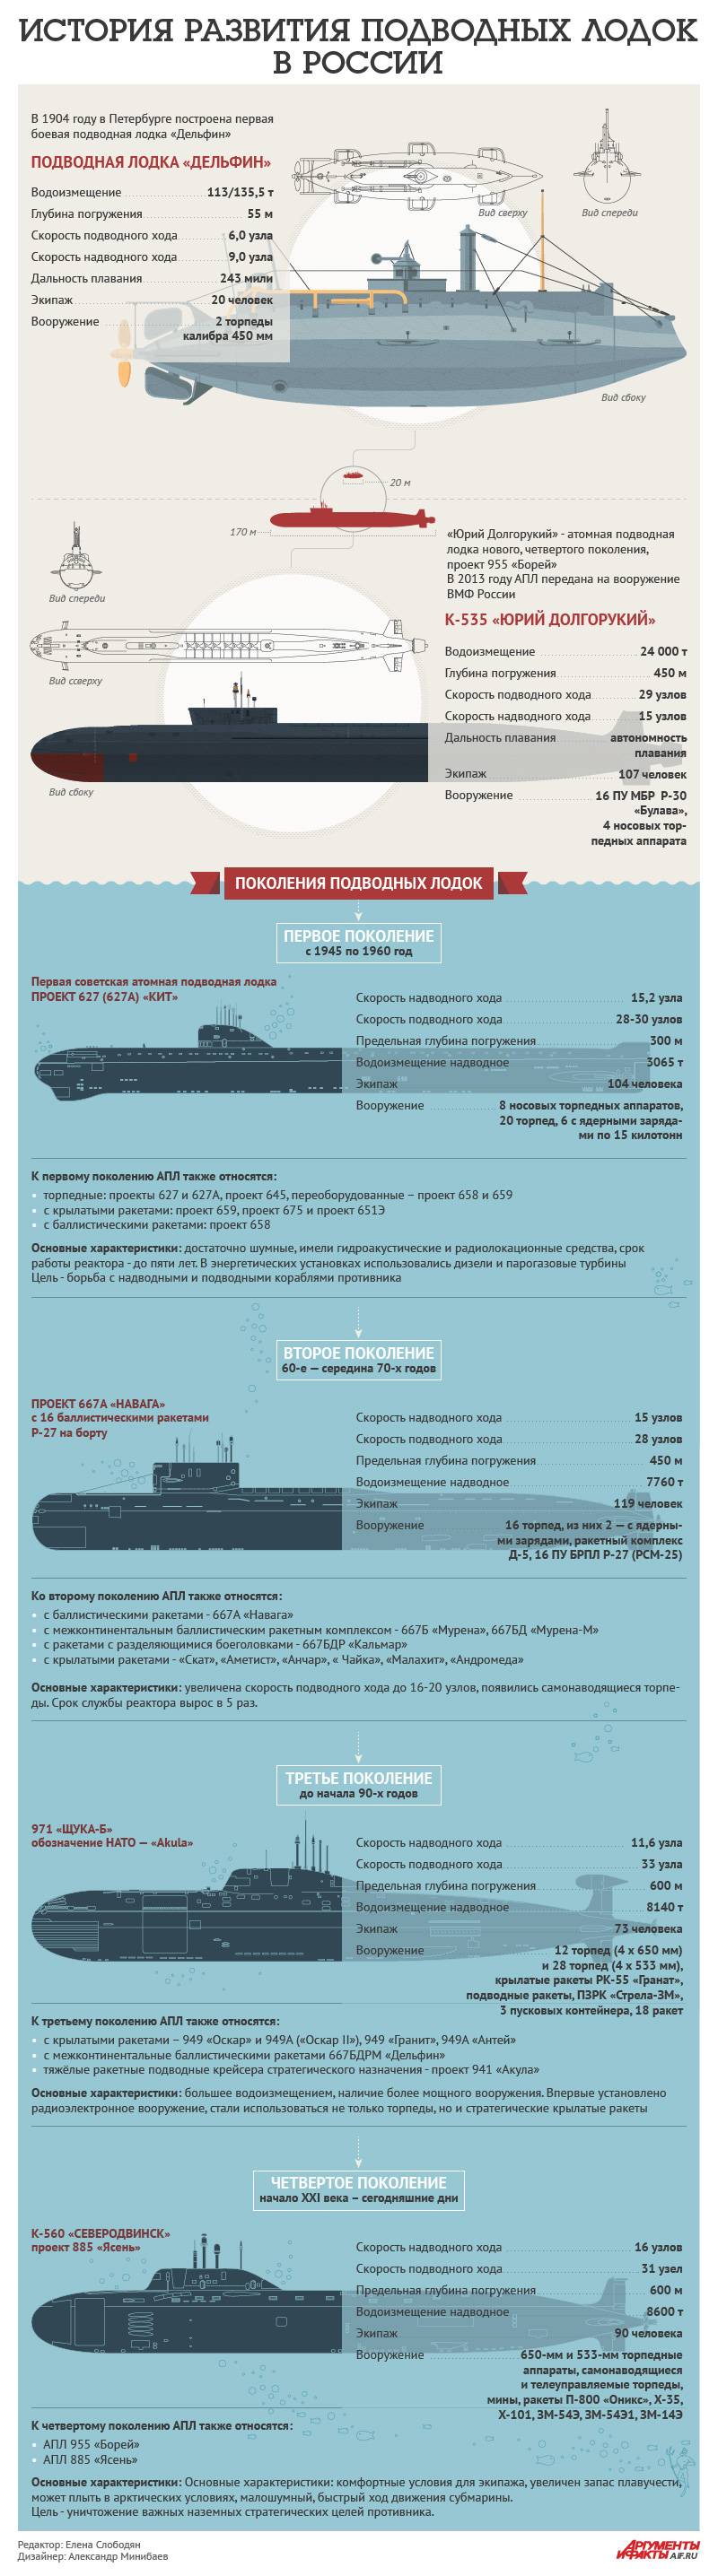 Эволюция российских атомных подводных лодок. Инфографика